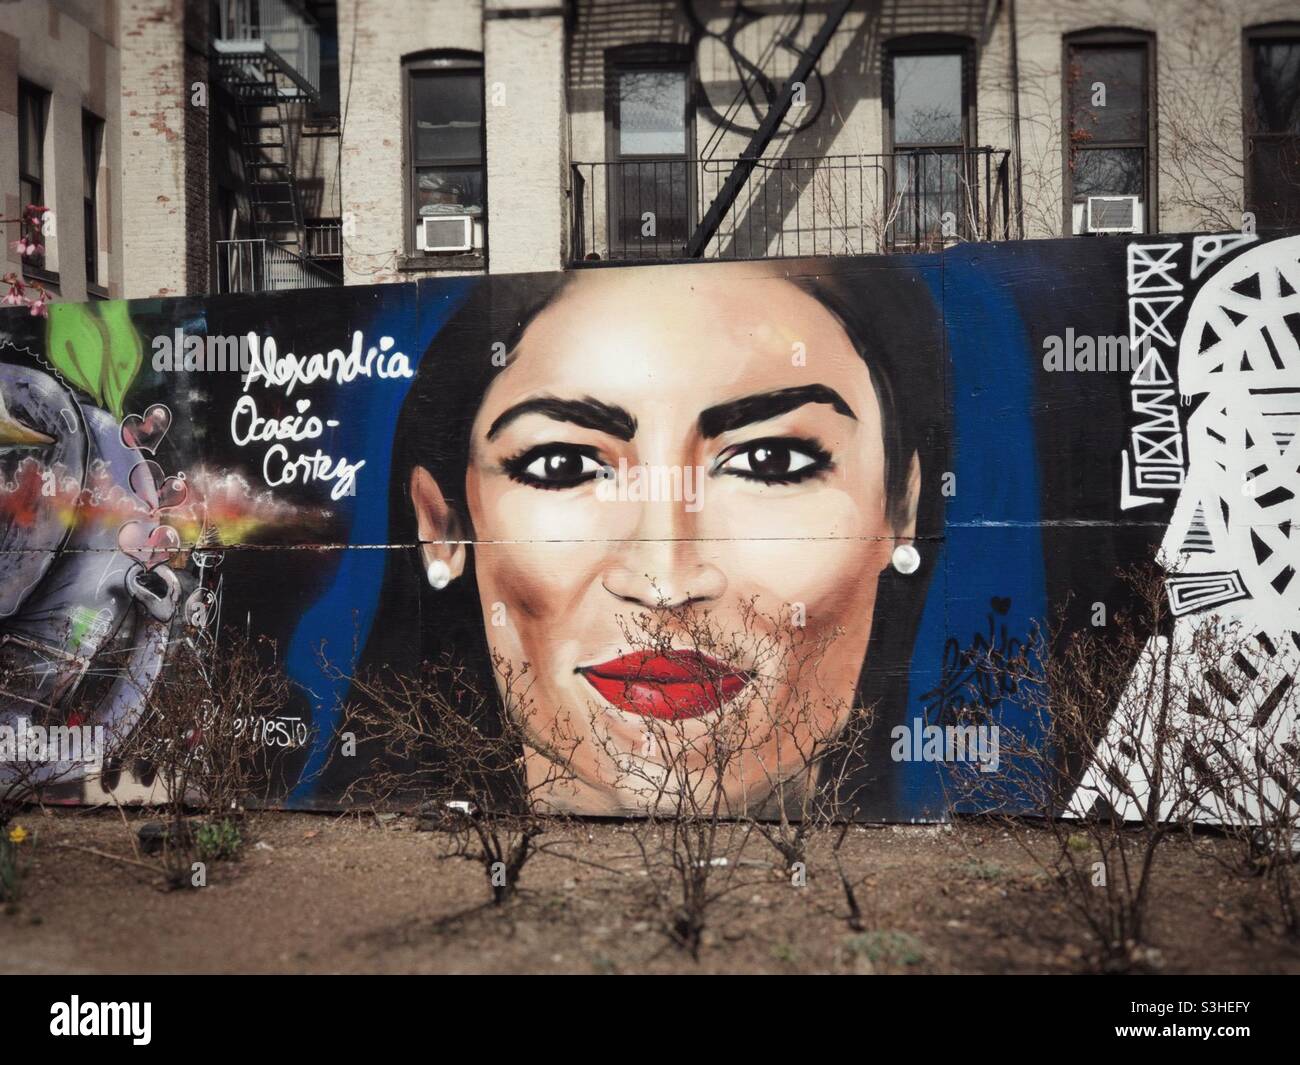 Un murale del Congresso degli Stati Uniti Alexandria Ocasio-Cortez a Manhattan, New York. I cespugli di primo piano danno l'aspetto dei capelli del viso. Foto Stock